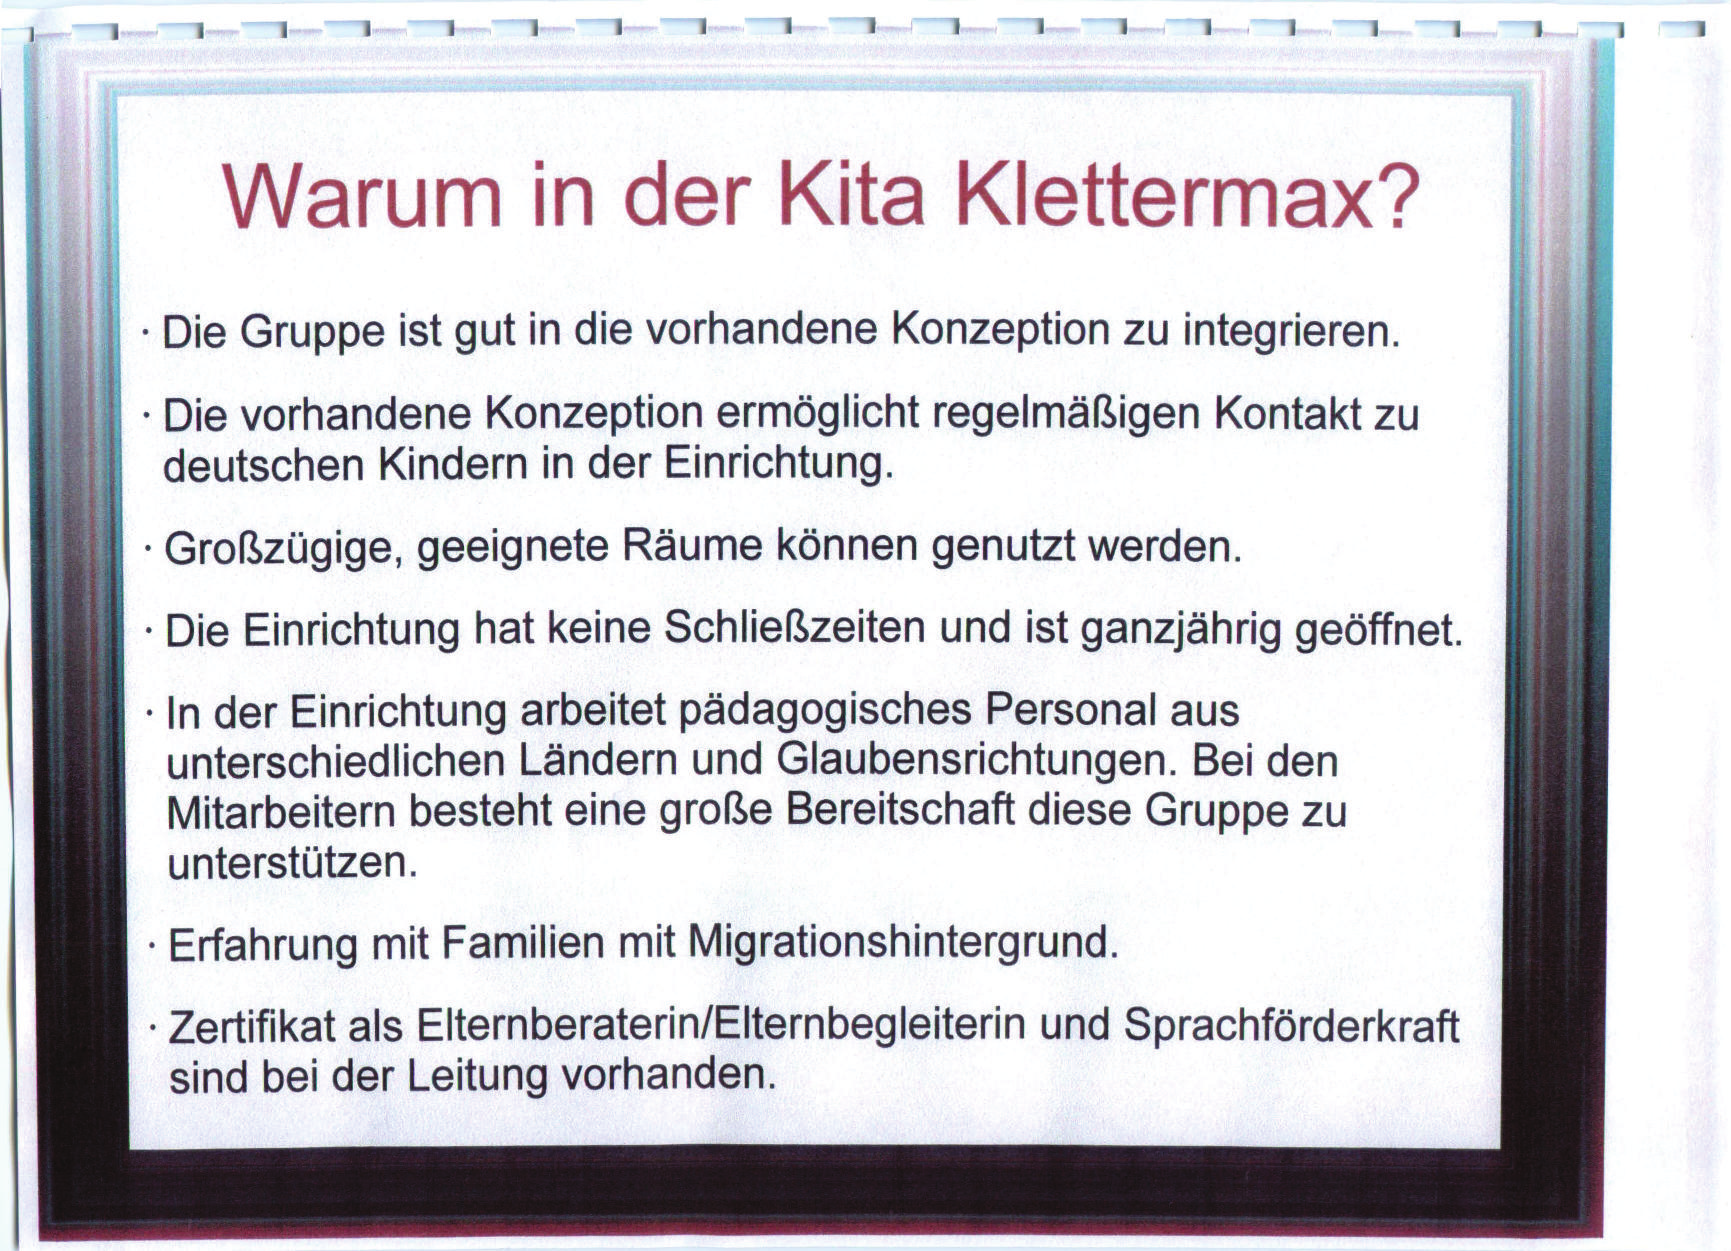 Warum inder KitaKlettermax? Die Gruppe ist gut in die vorhandene Konzeption zu integrieren. Die vorhandene Konzeption ermöglicht regelmäßigen Kontakt zu deutschen Kindern in der Einrichtung.